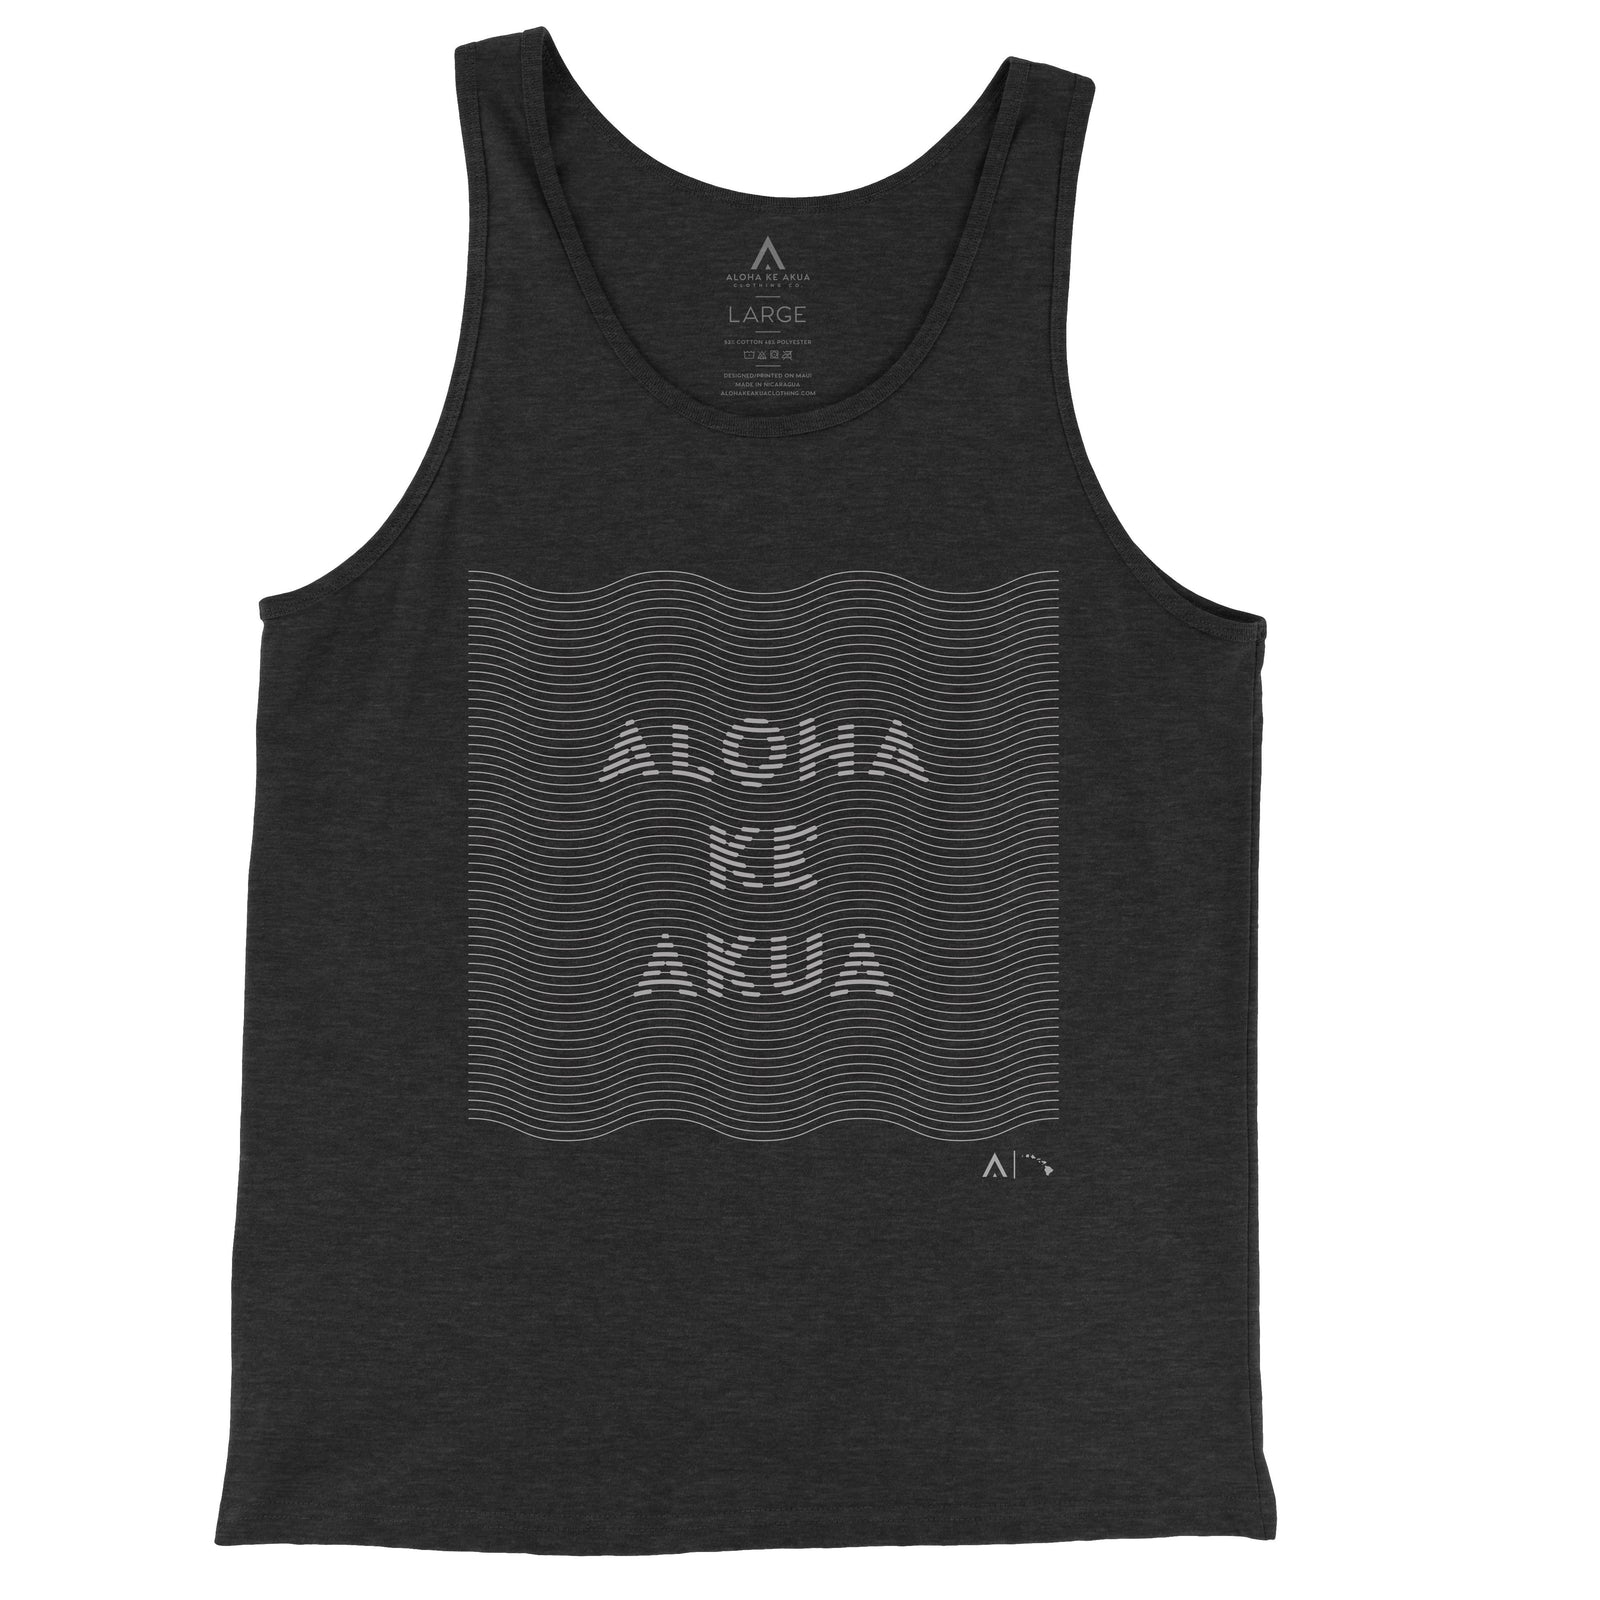 Pop-Up Mākeke - Aloha Ke Akua Clothing - Kainalu Men's Tank Top - Black Heather